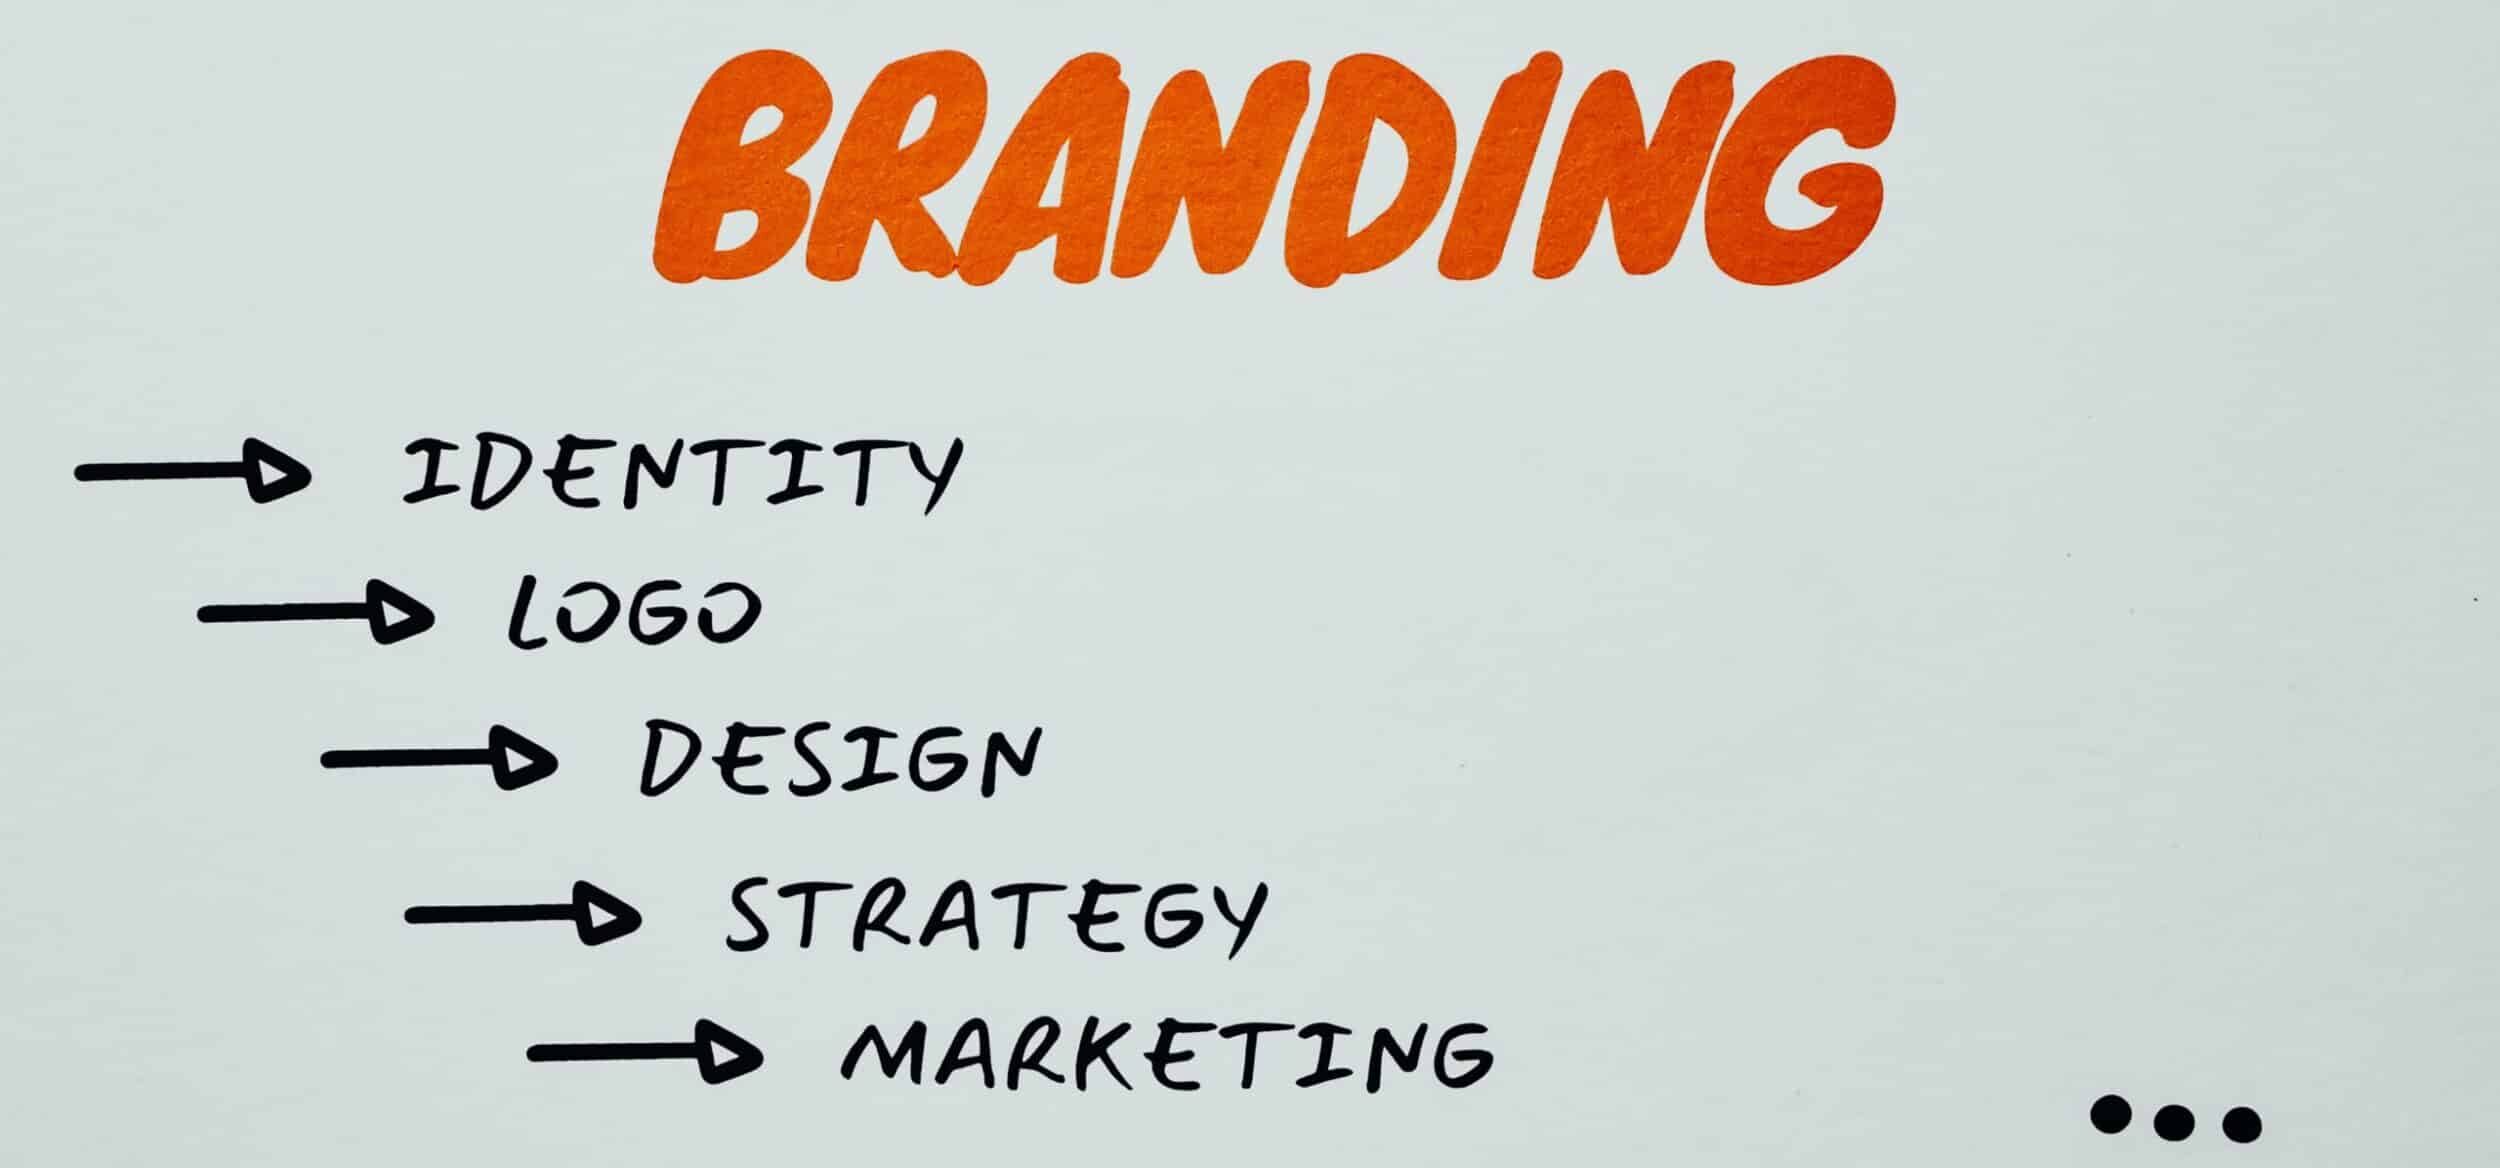 10 Expert Tips on Branding | SaasLyft